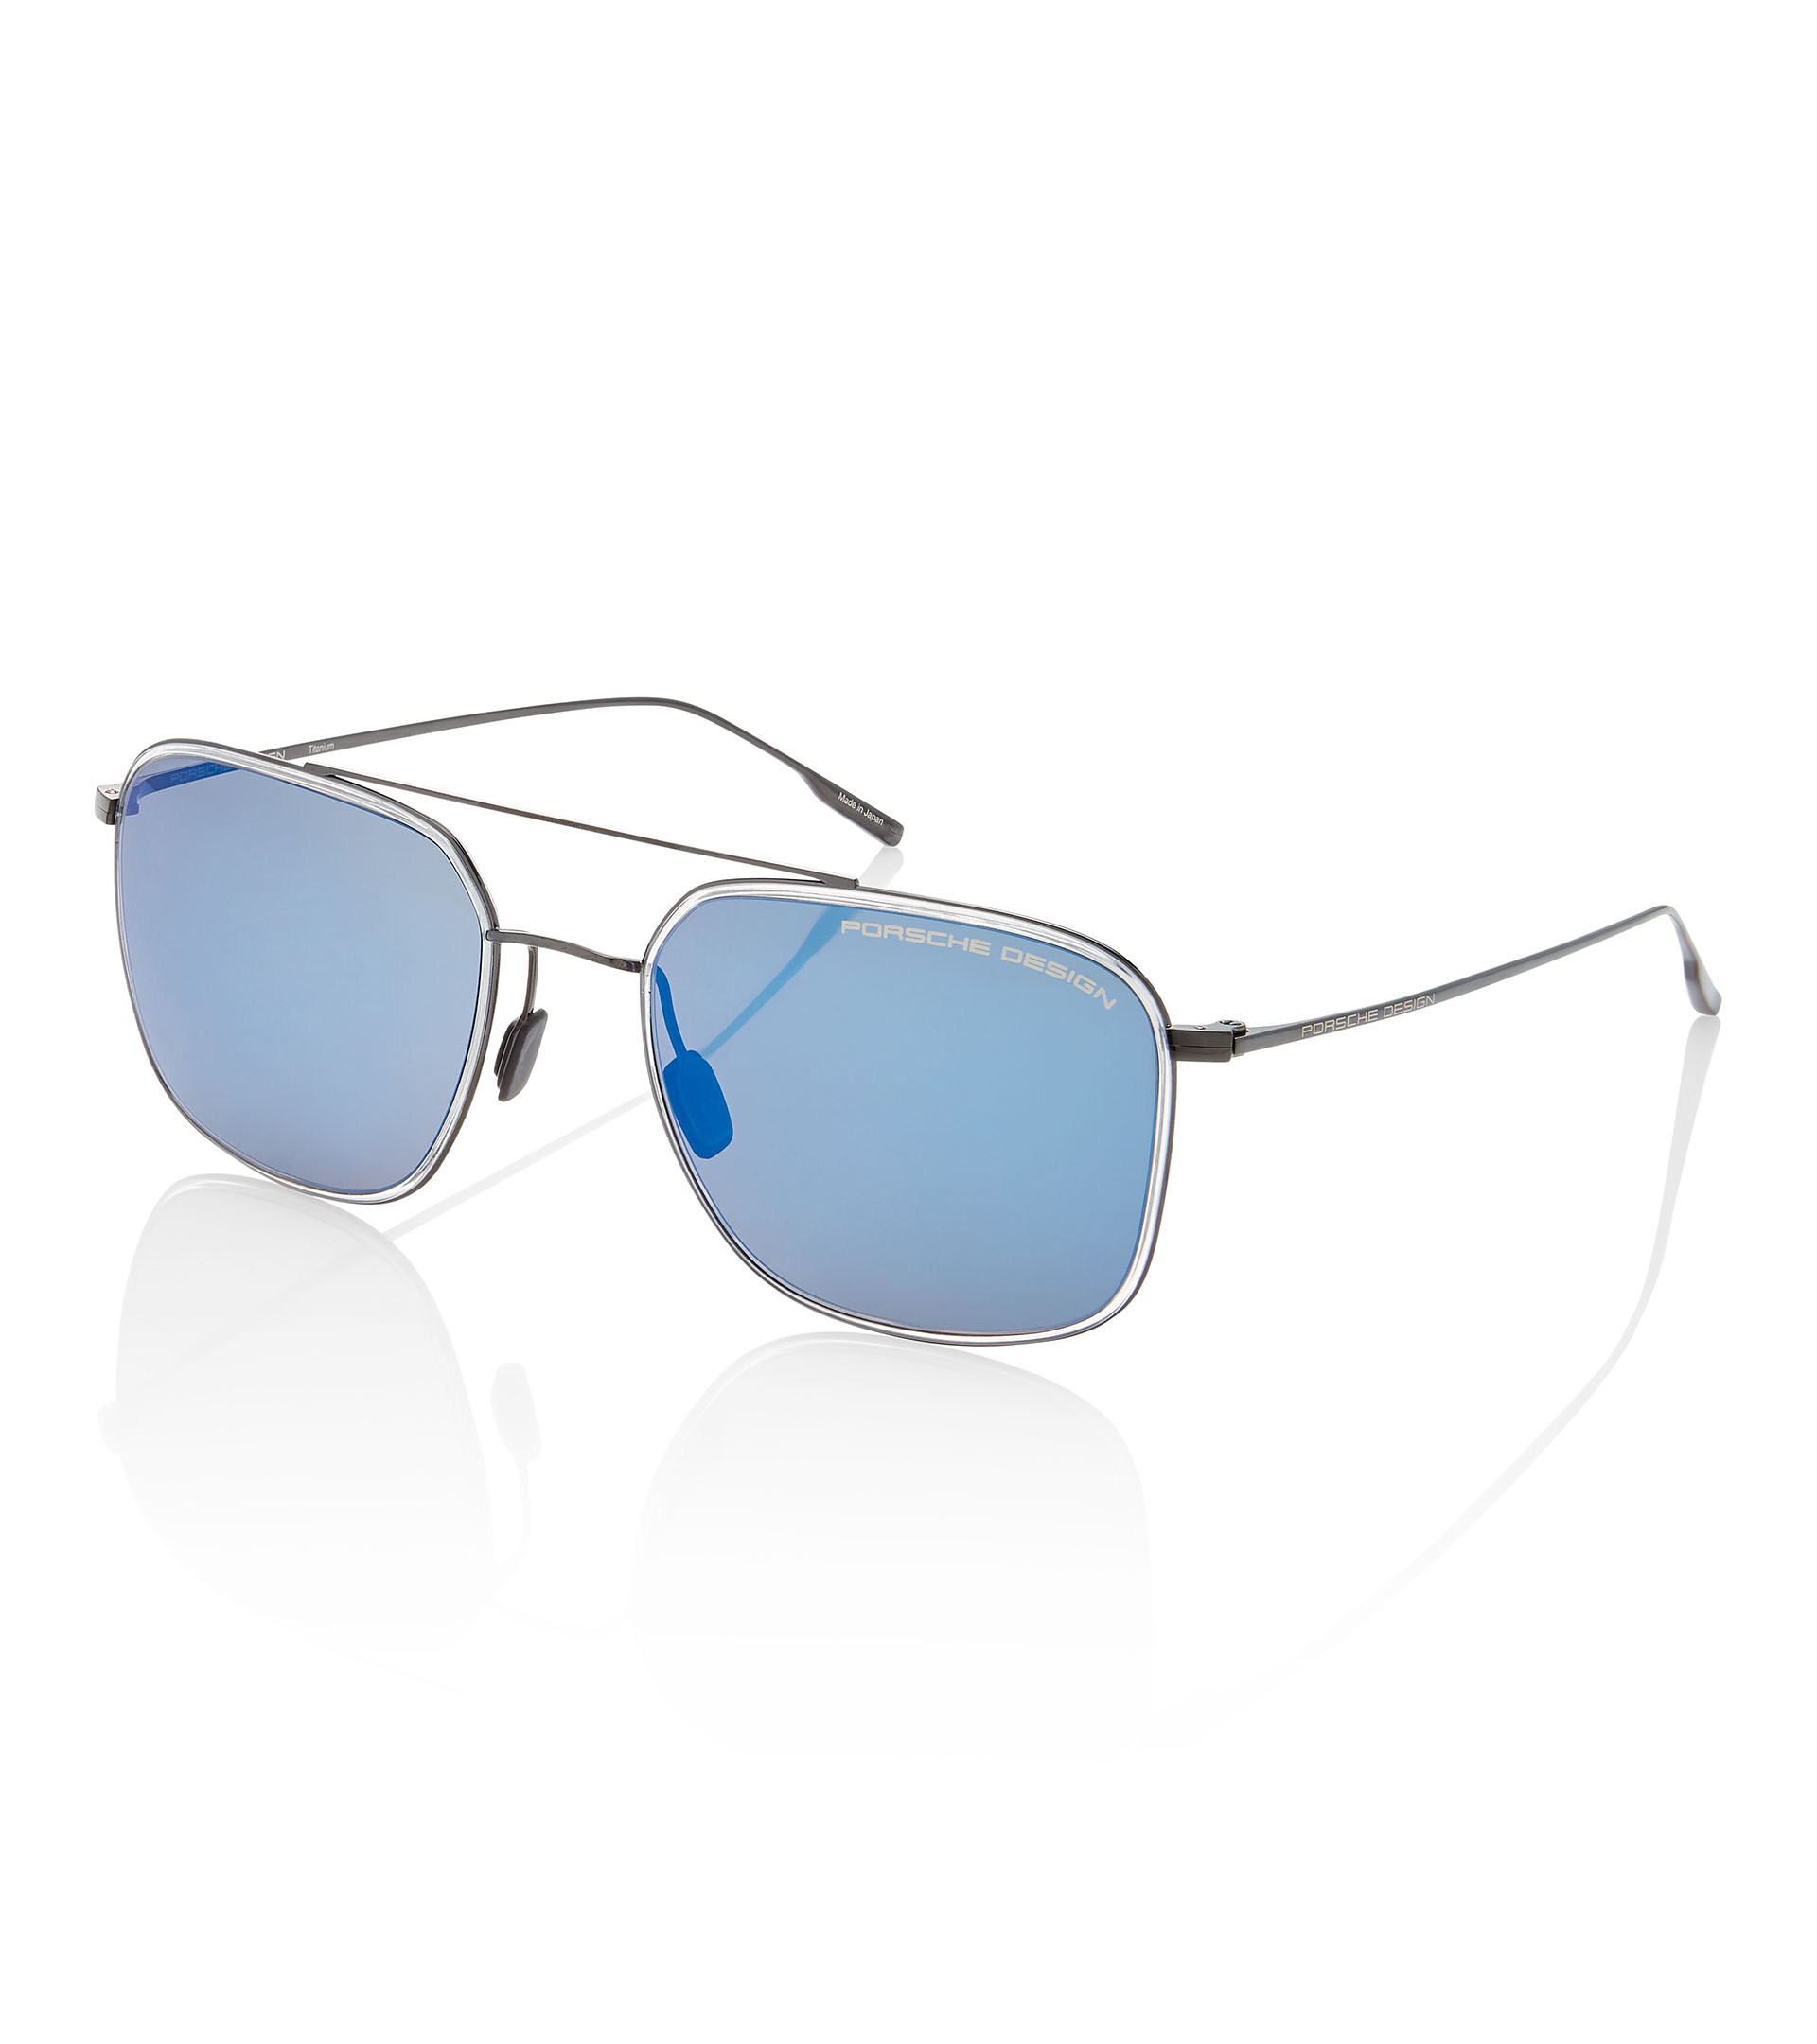 3.50 P8314 D Porsche Design Leesbril 55mm Licht Satijn Goud 0.25 tot Accessoires Zonnebrillen & Eyewear Leesbrillen 